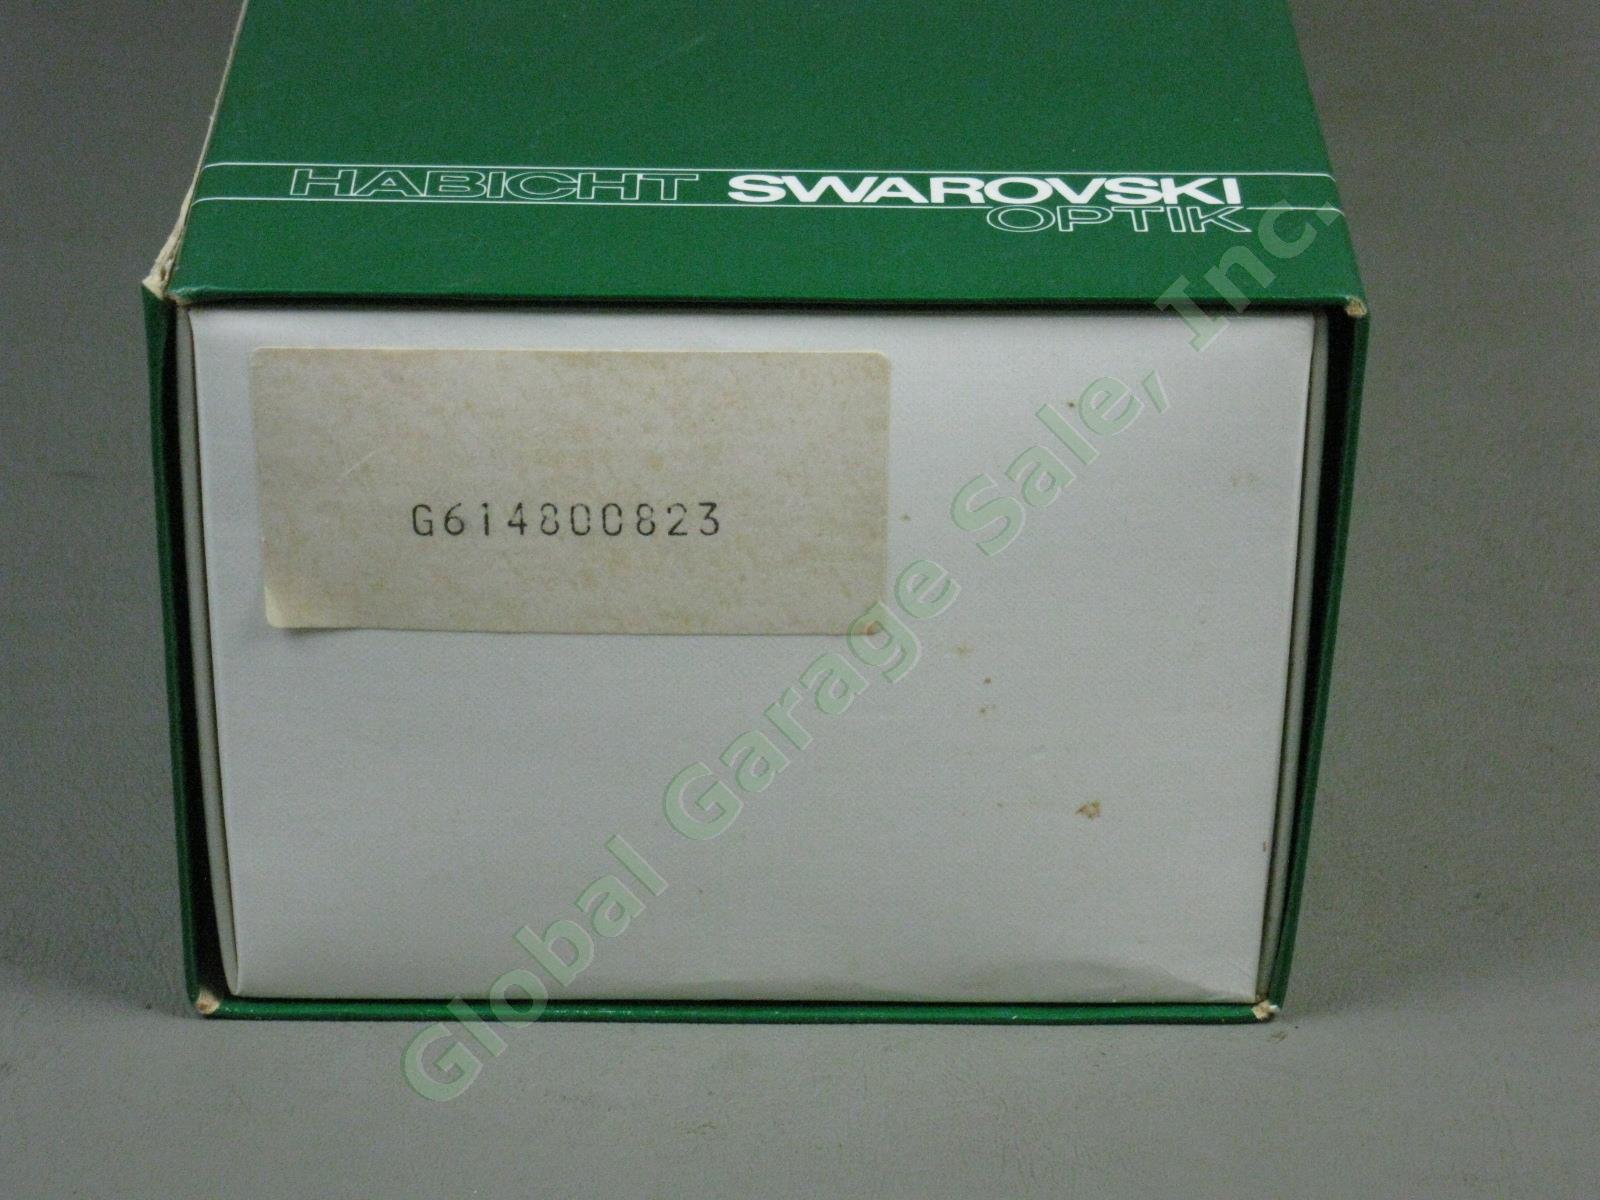 Swarovski Optik Habicht AT80 Spotting Scope w/20-60x Eyepiece +Box One Owner NR! 13